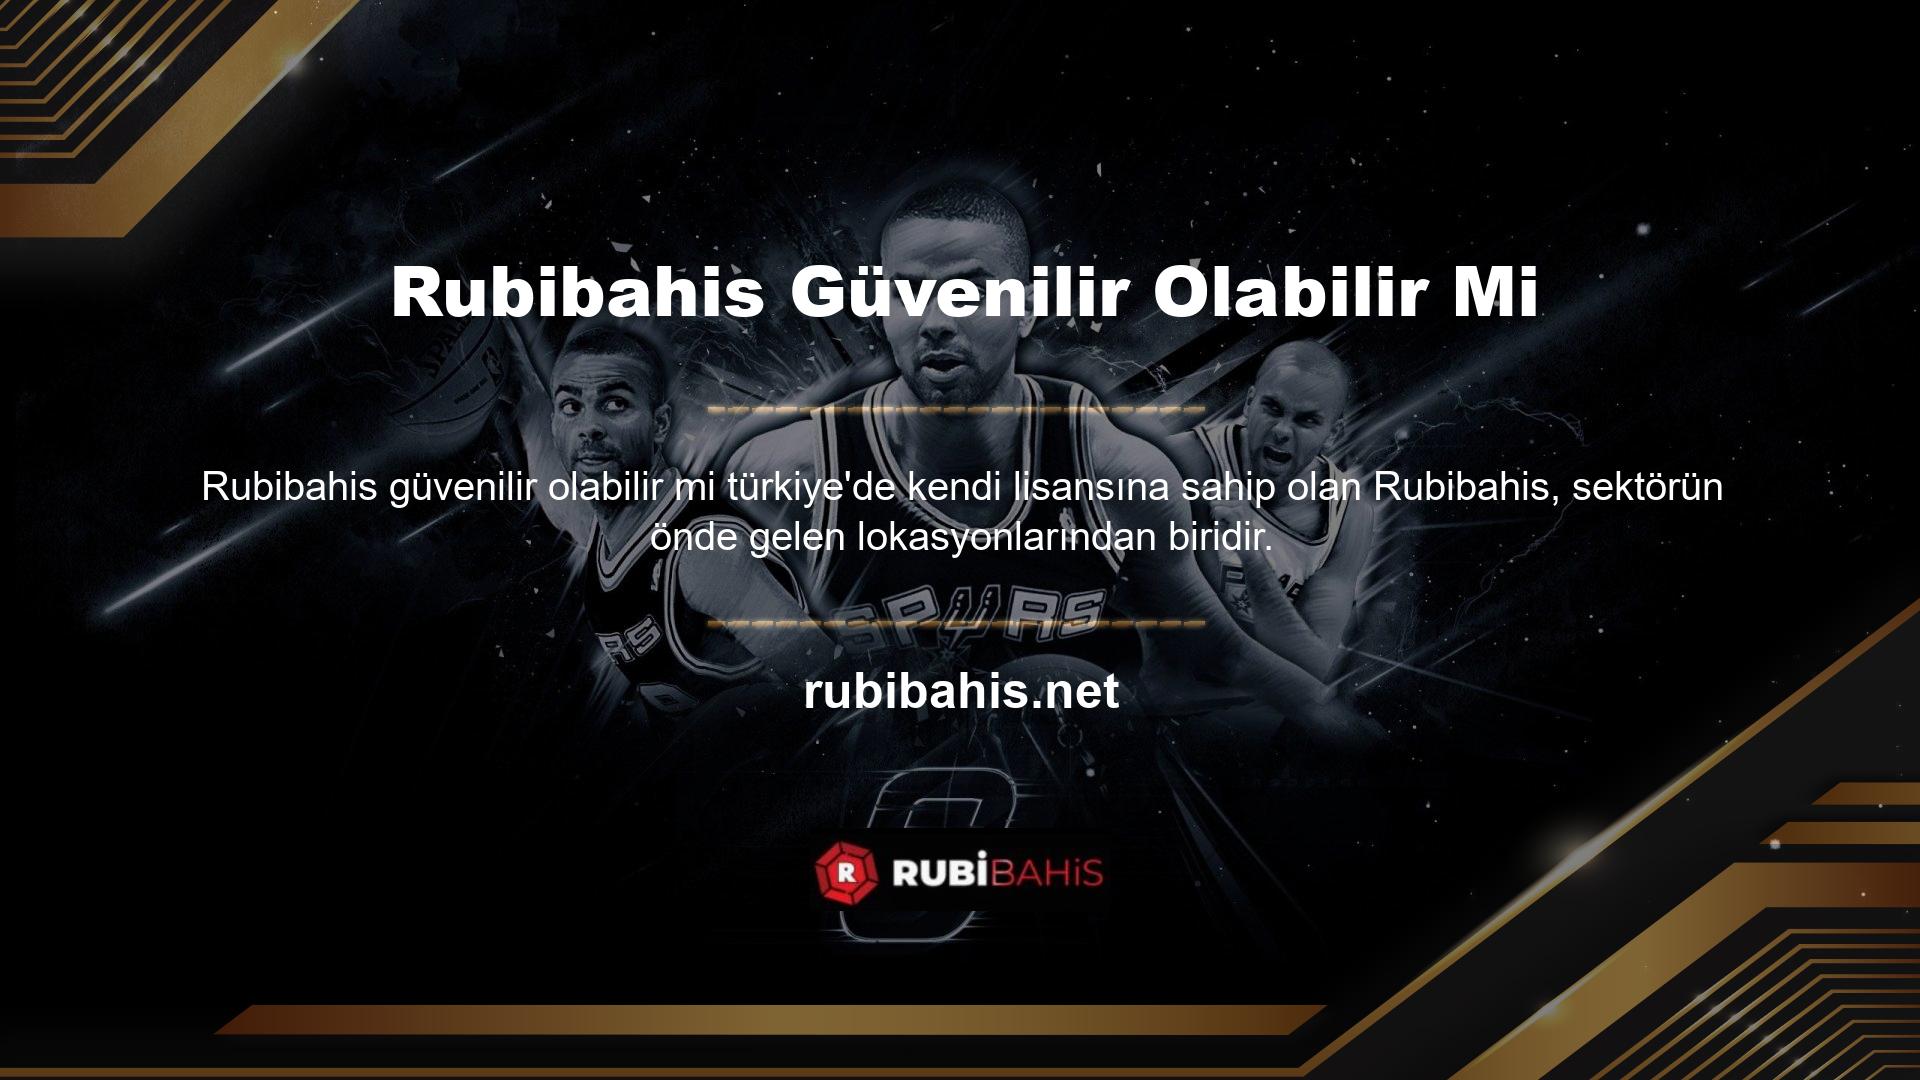 Avrupa bahis sitelerinden biri olan Rubibahis, Türkiye'nin en iyi 3 bahis sitesinden biridir ve kurulduğu günden bu yana en çok üyeye sahiptir